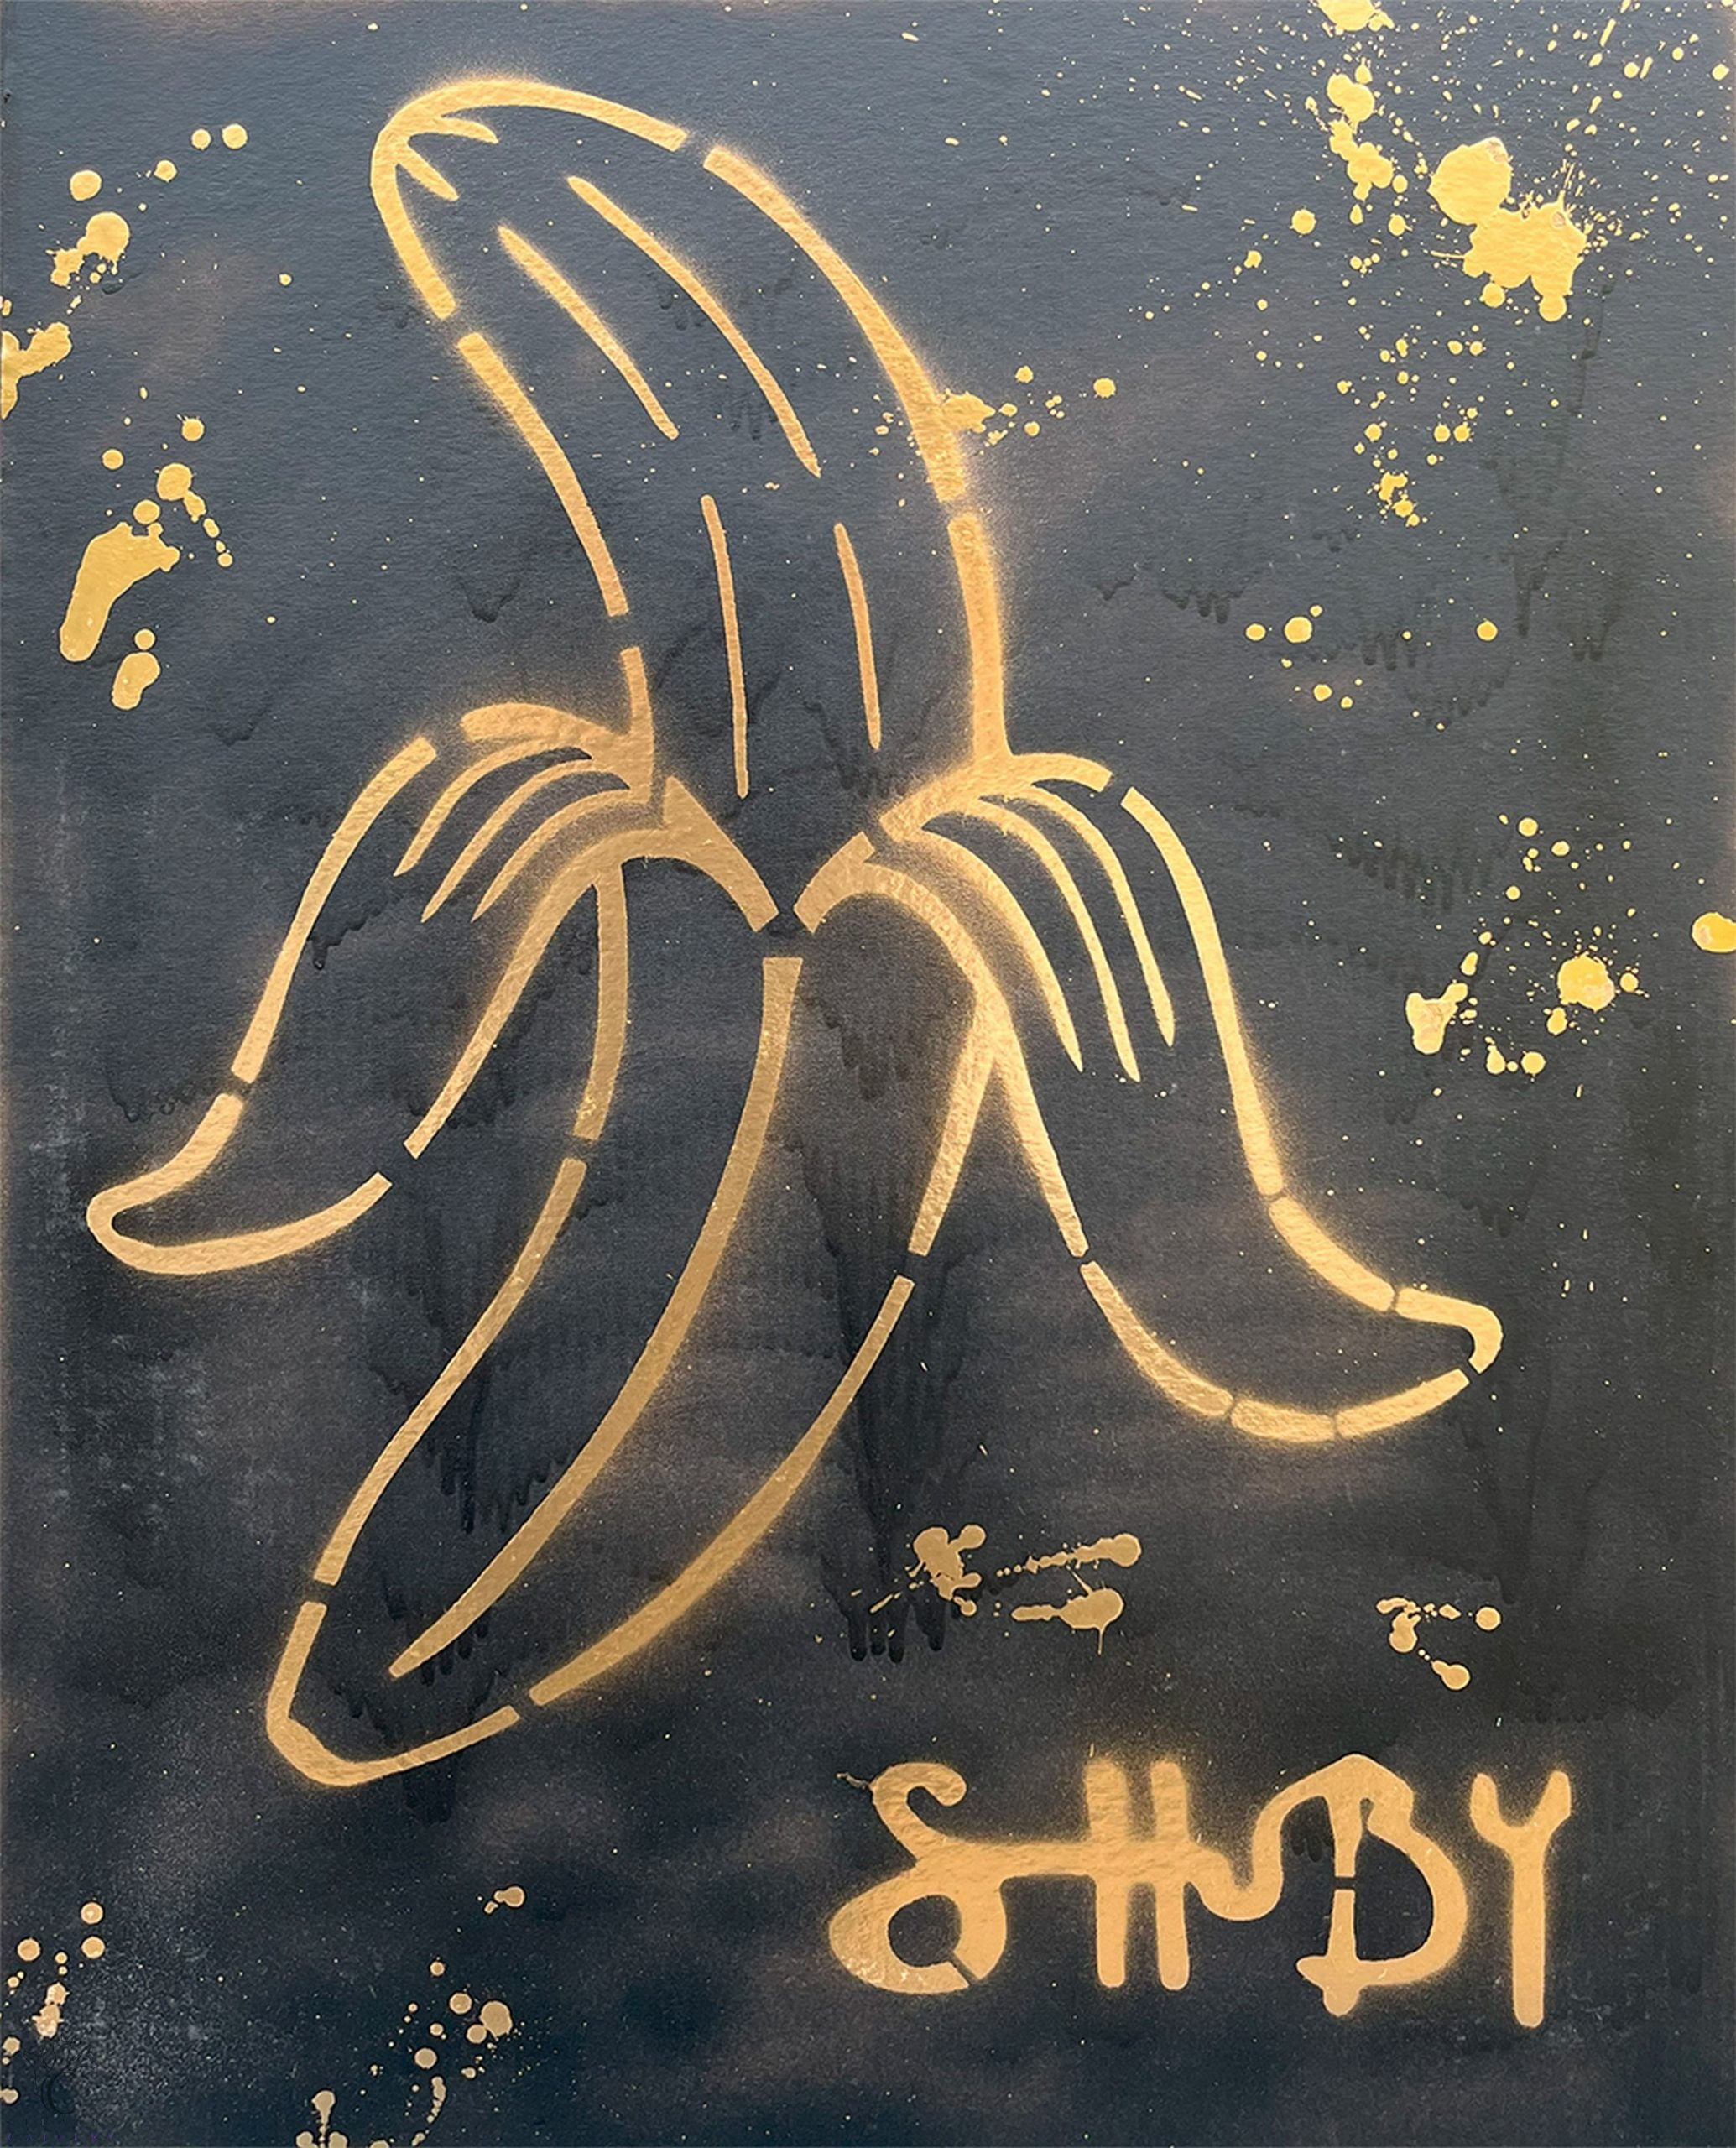 Banana (Gold) - Shuby